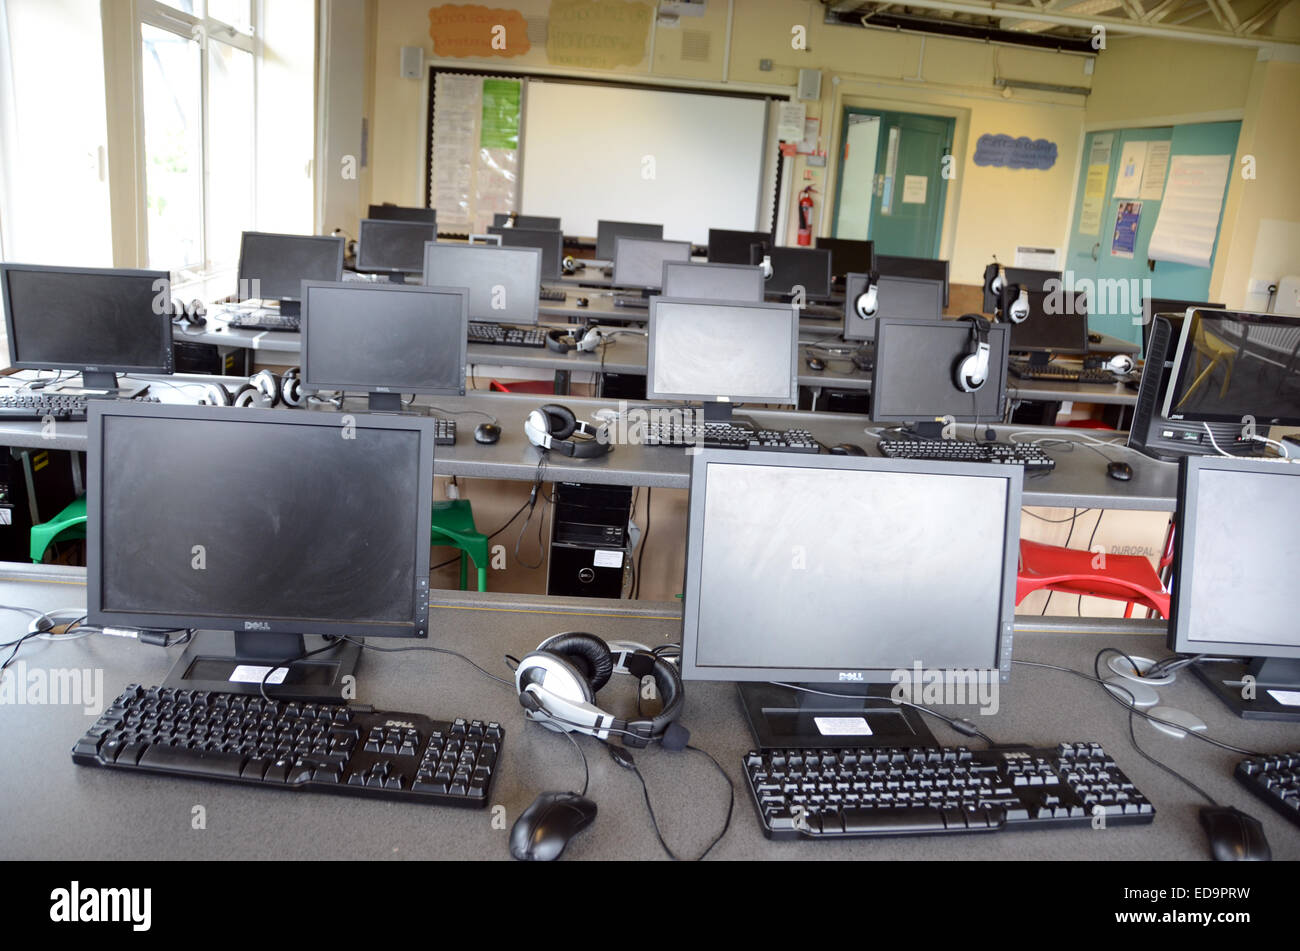 british junior school ICT room Stock Photo